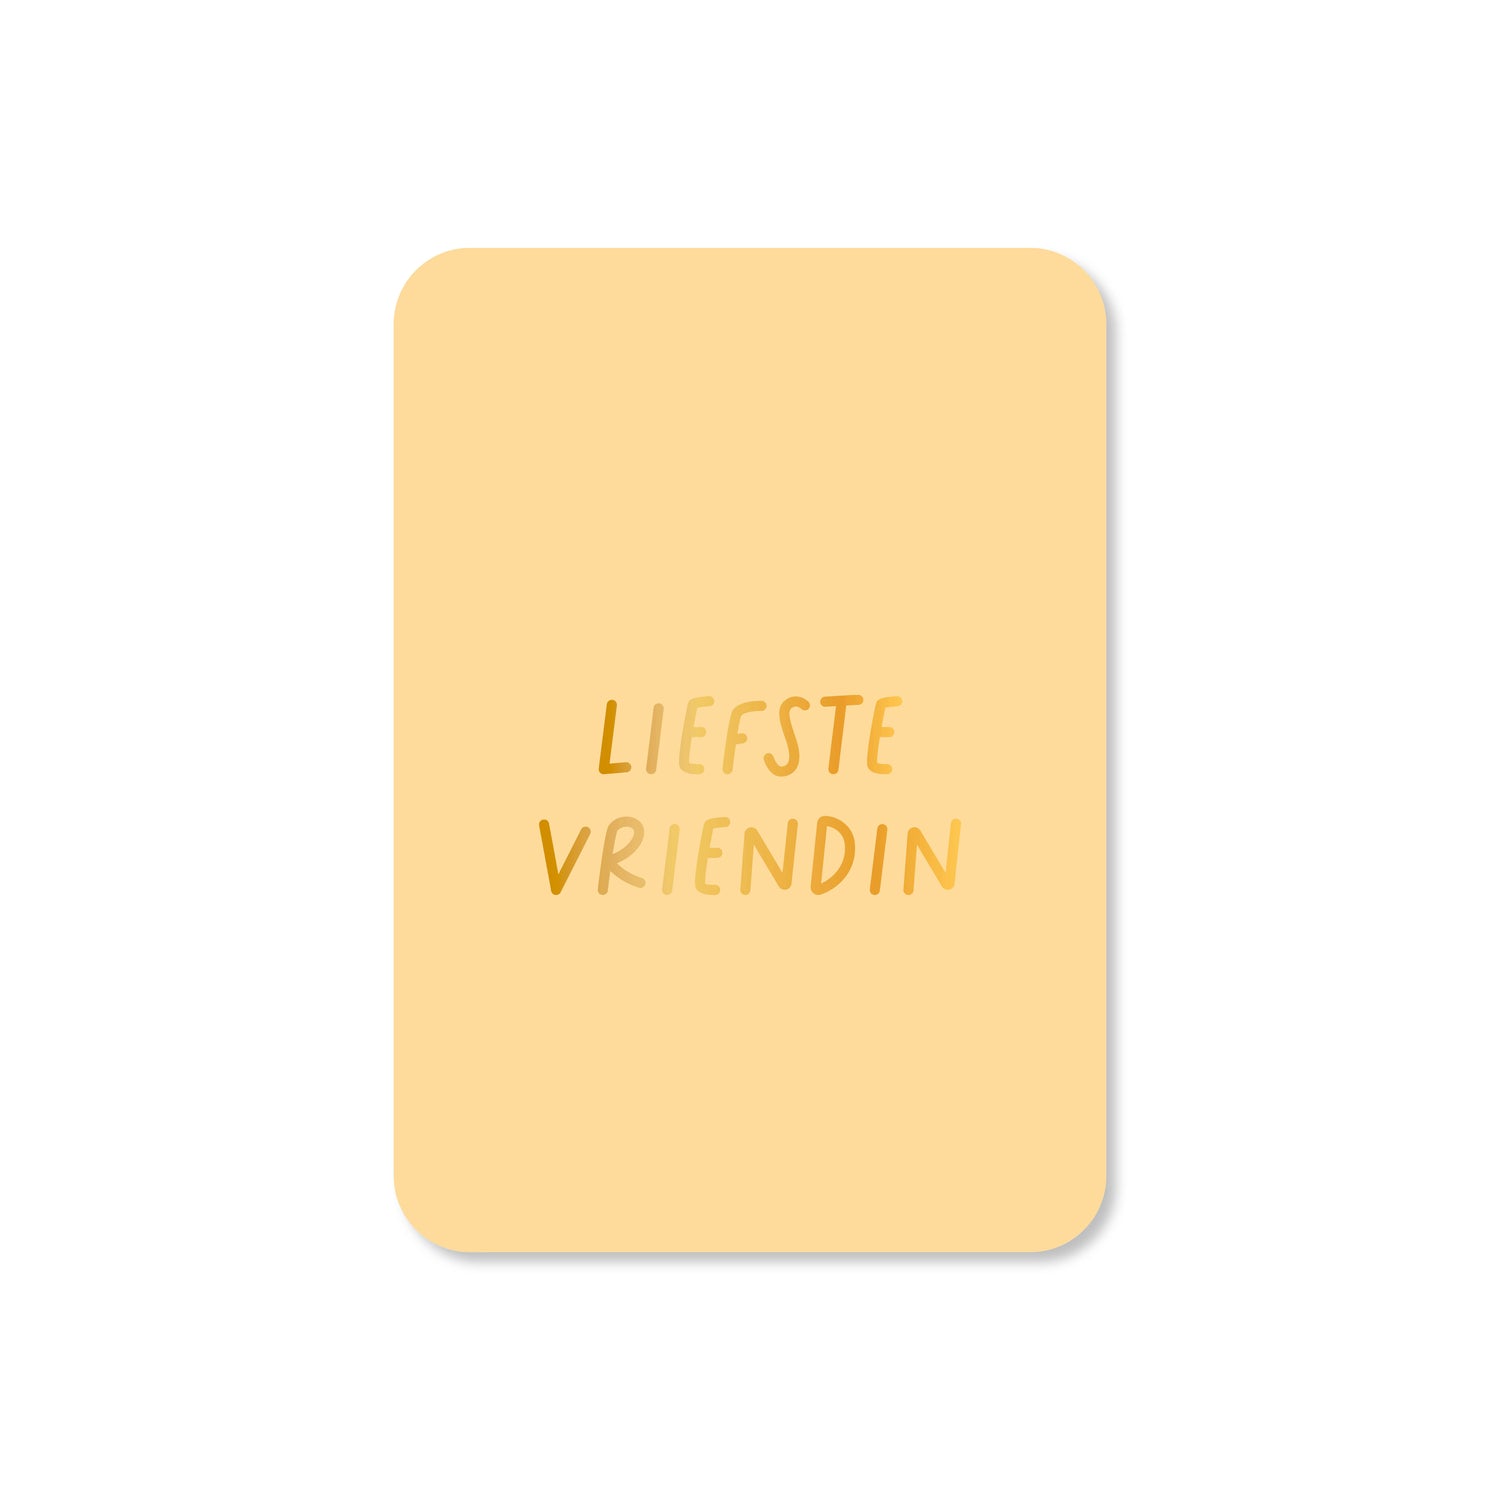 Minikaart Liefste vriendin (met goudfolie)